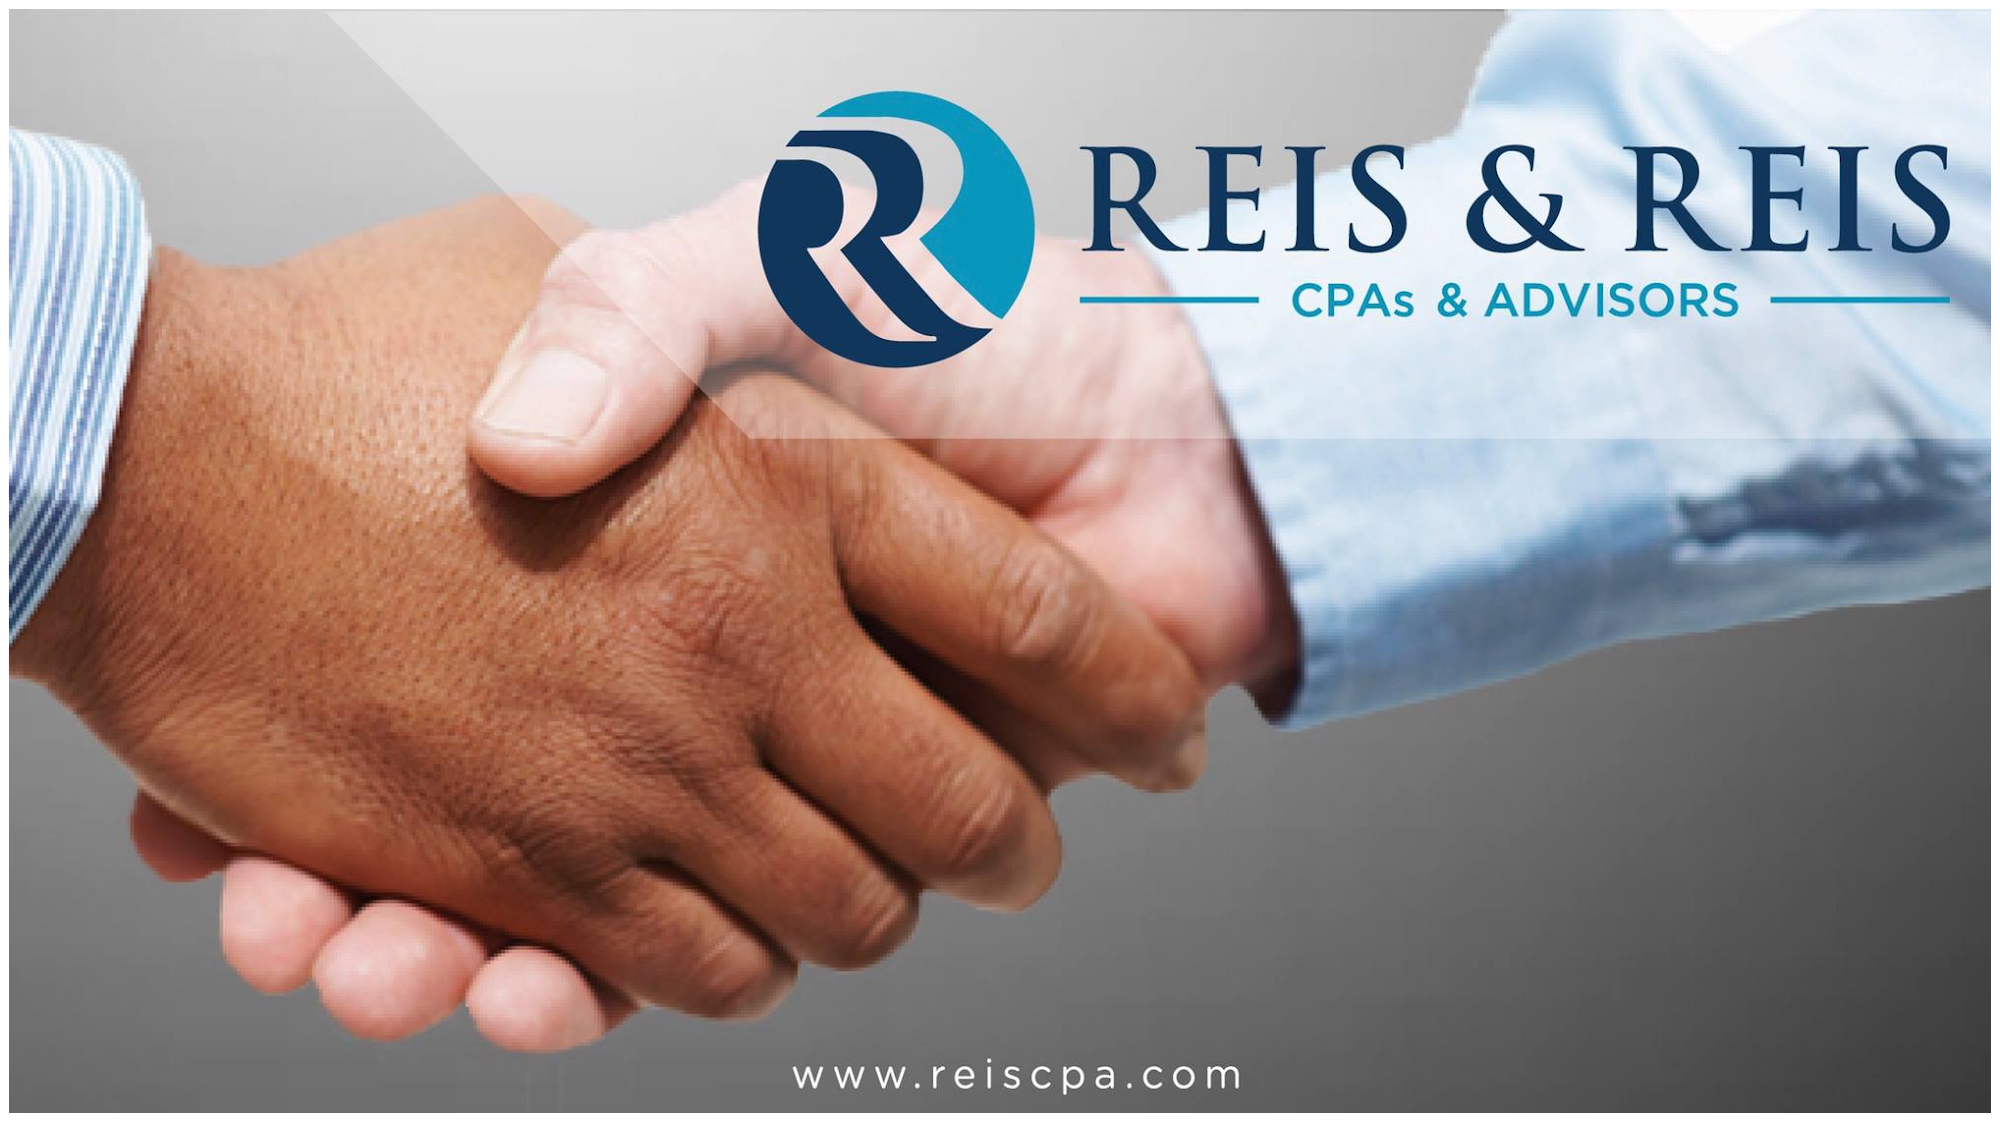 Reis & Reis, CPAs & Advisors 119 N 1st St, Abbotsford Wisconsin 54405